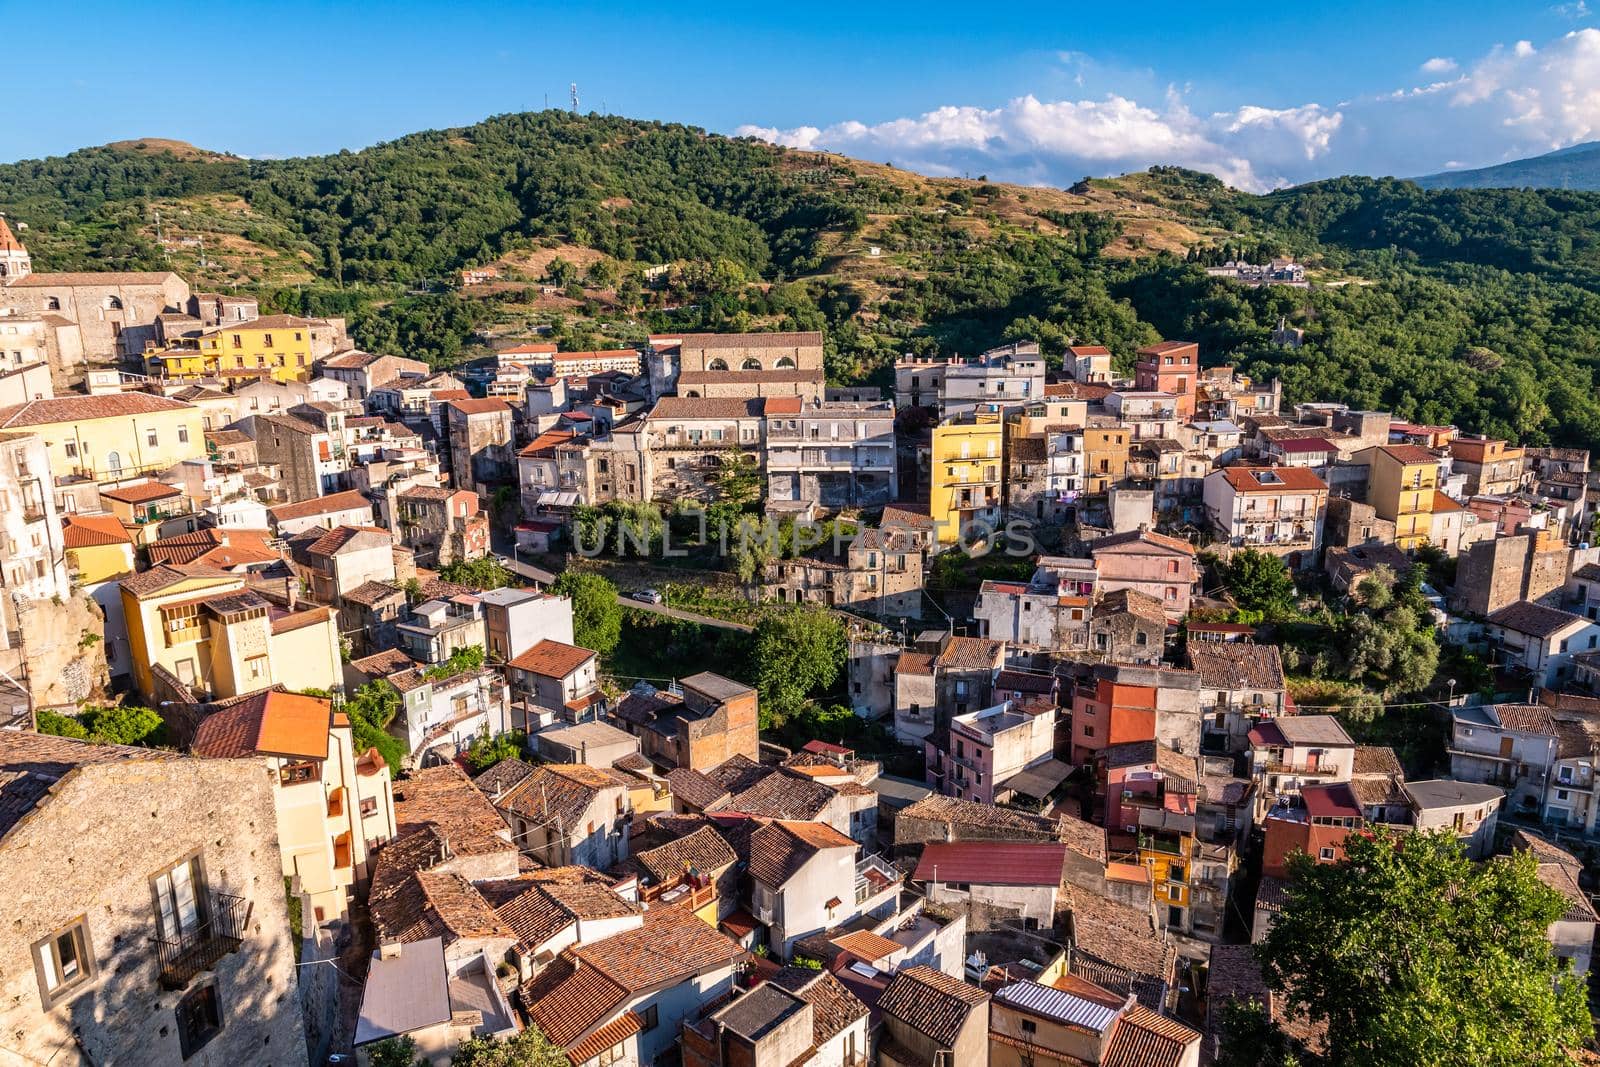 Panoramic view of Castiglione di Sicilia in a sunny summer day, Italy by mauricallari